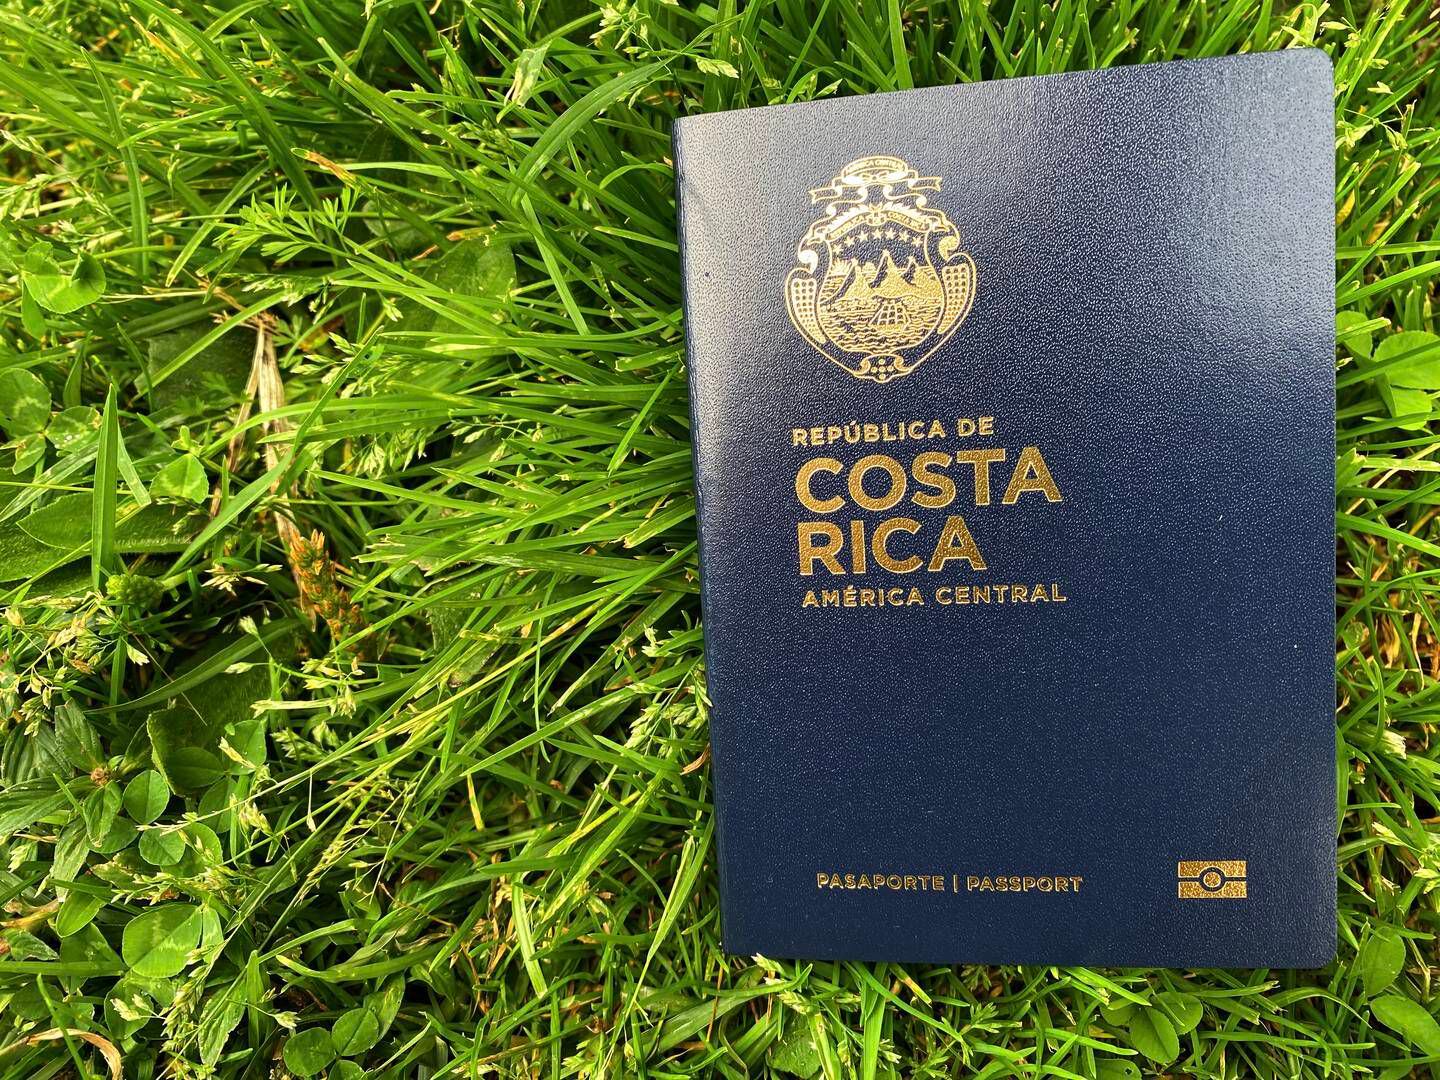 Correos de Costa Rica reanuda entrega de pasaportes a domicilio